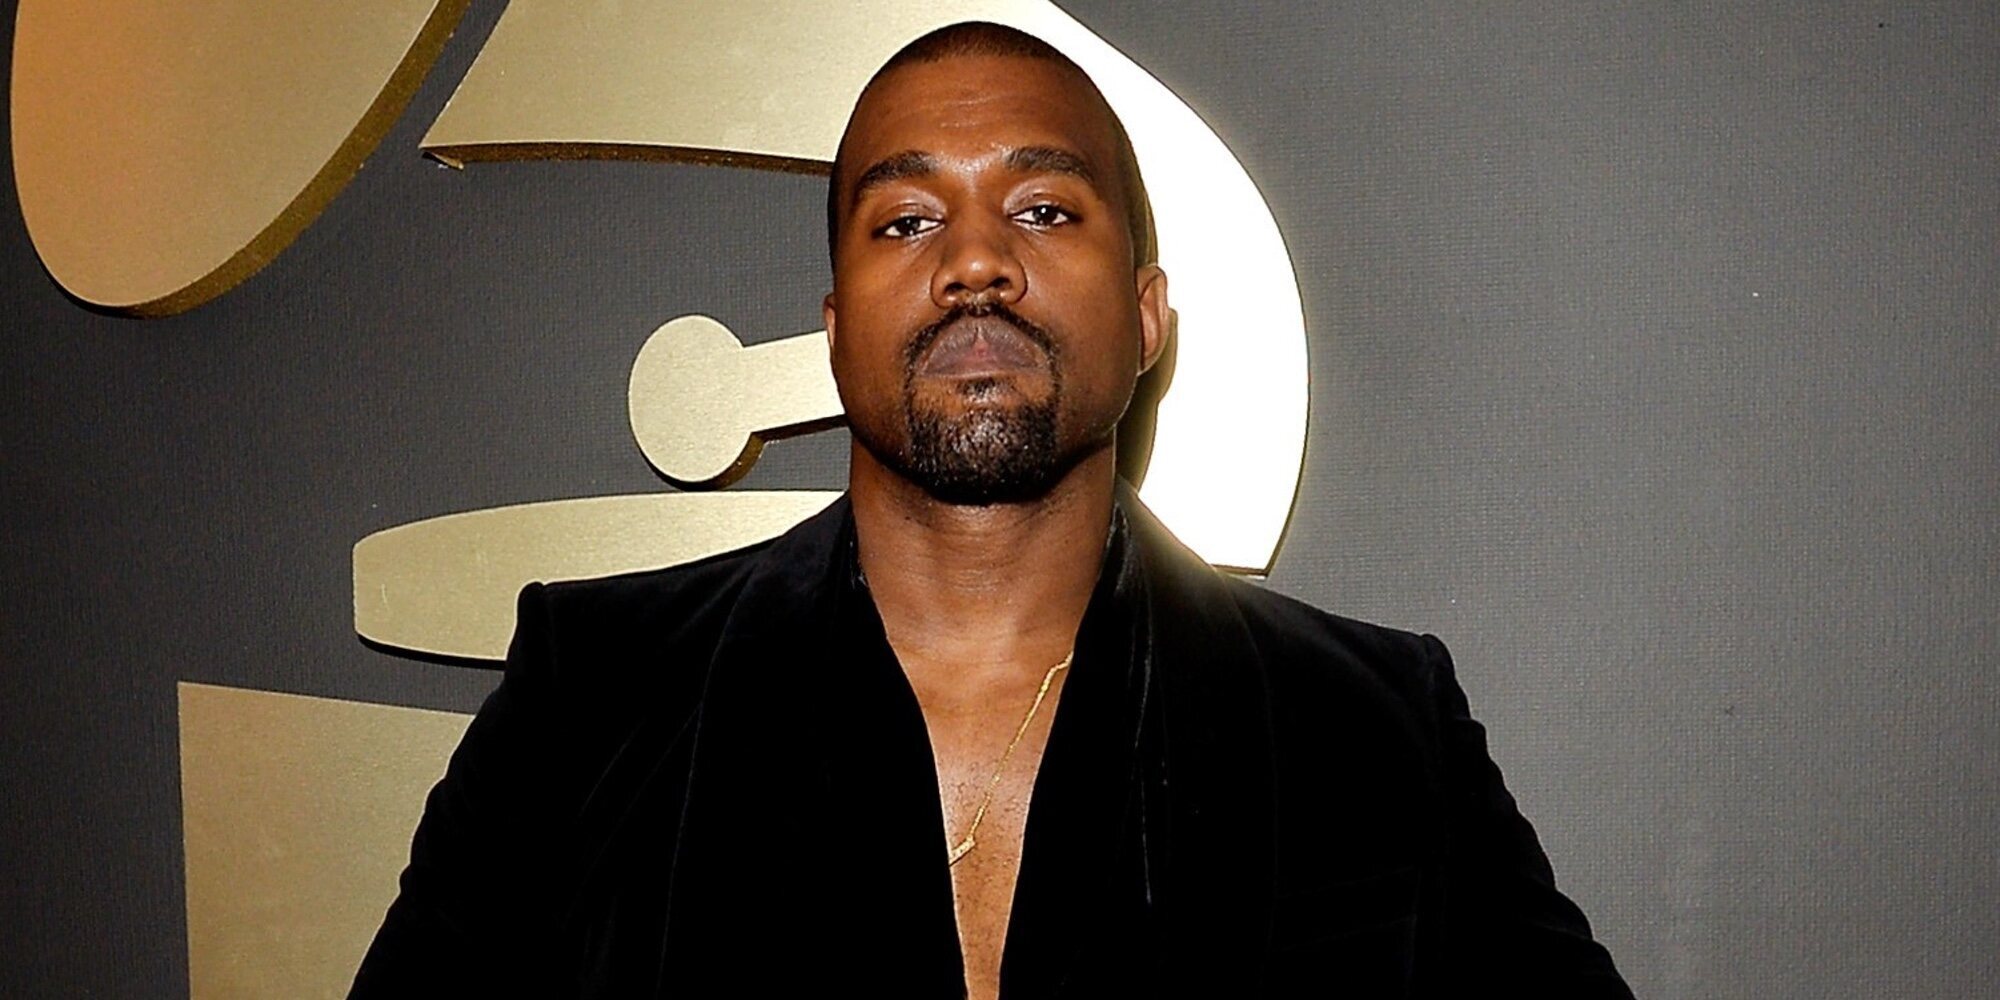 La organización de los Grammy 2022 le retira a Kanye West la invitación pese a estar nominado